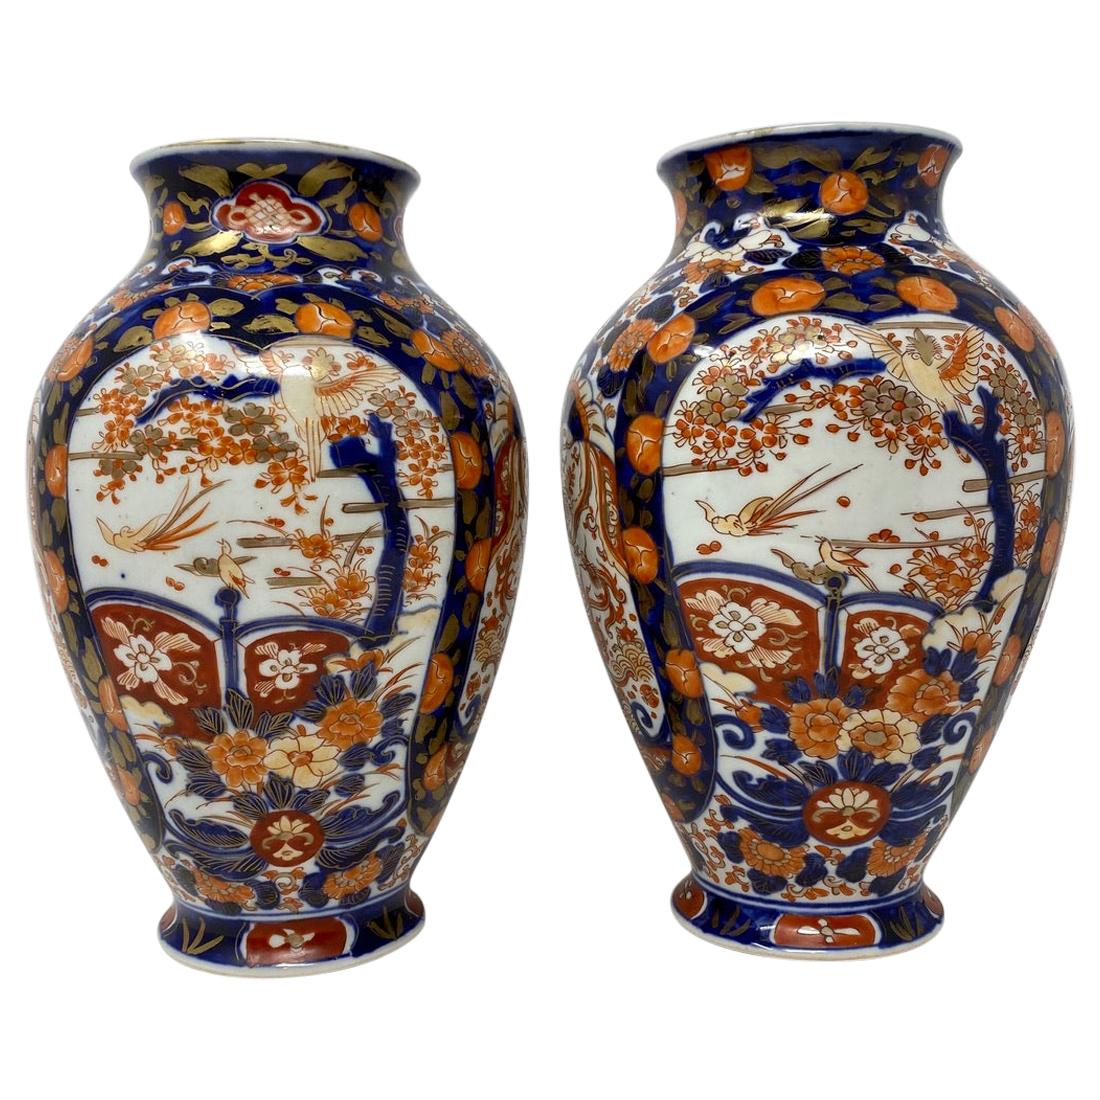 Pair of Antique Japanese Imari Vases, circa 1860-1870